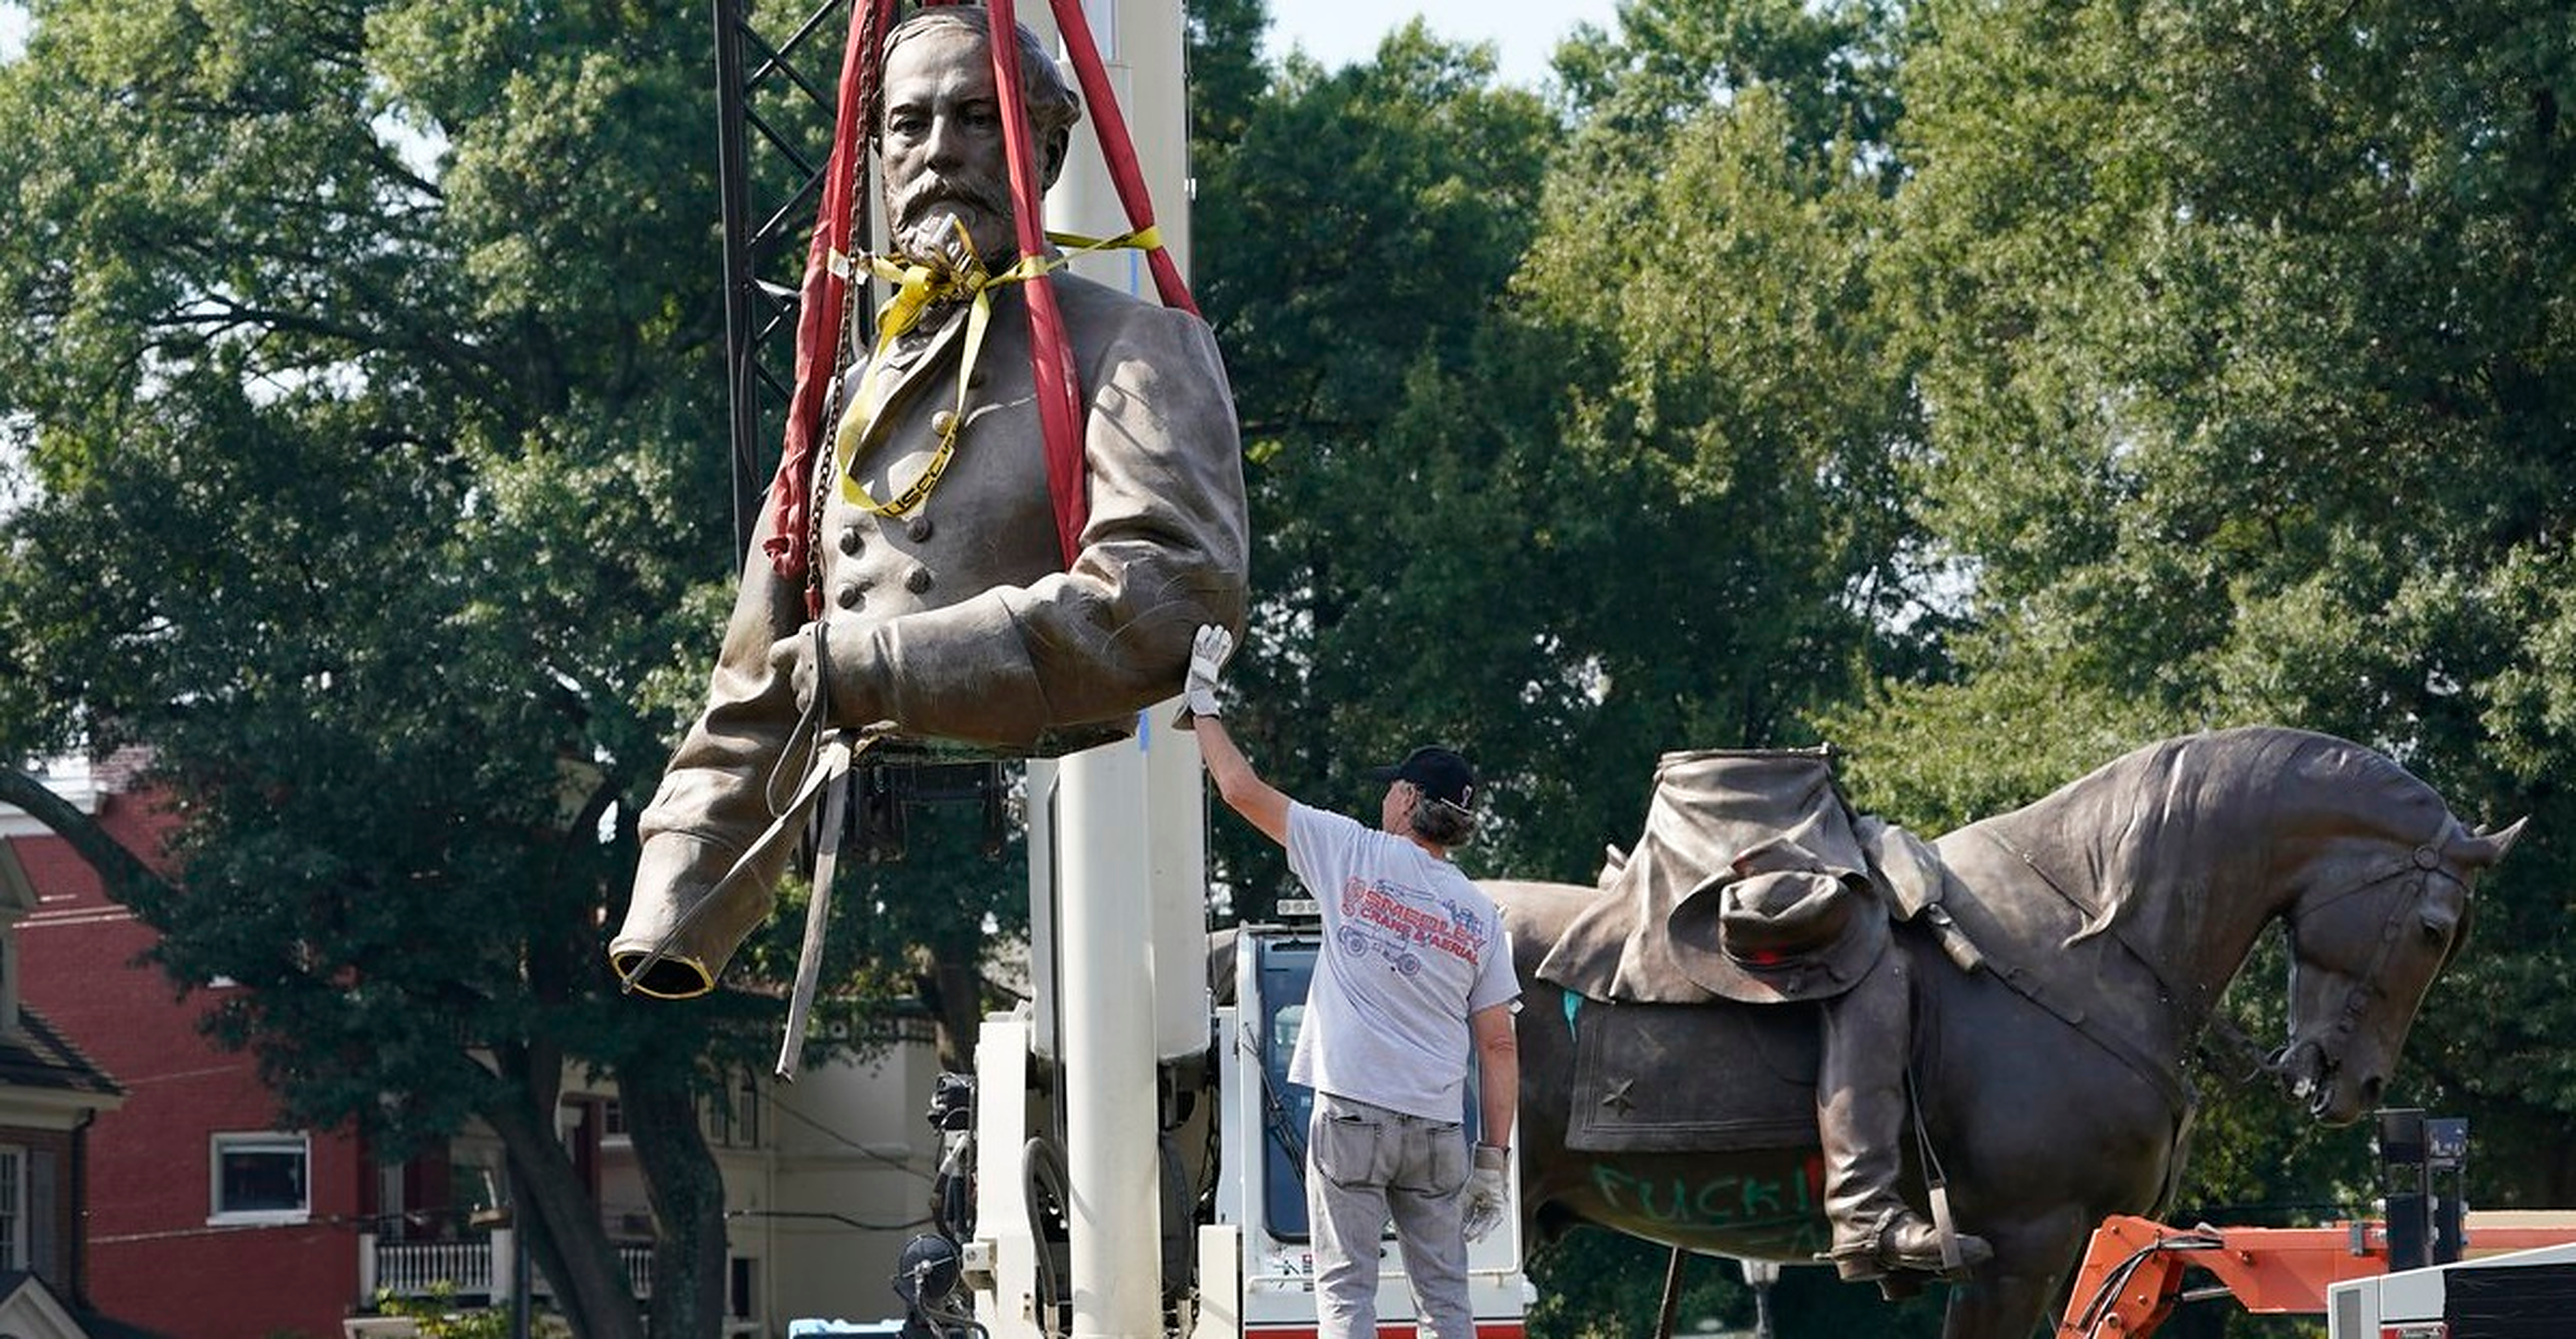 SUA| Statuia generalului Lee, considerată simbol rasist, a fost dezmembrată